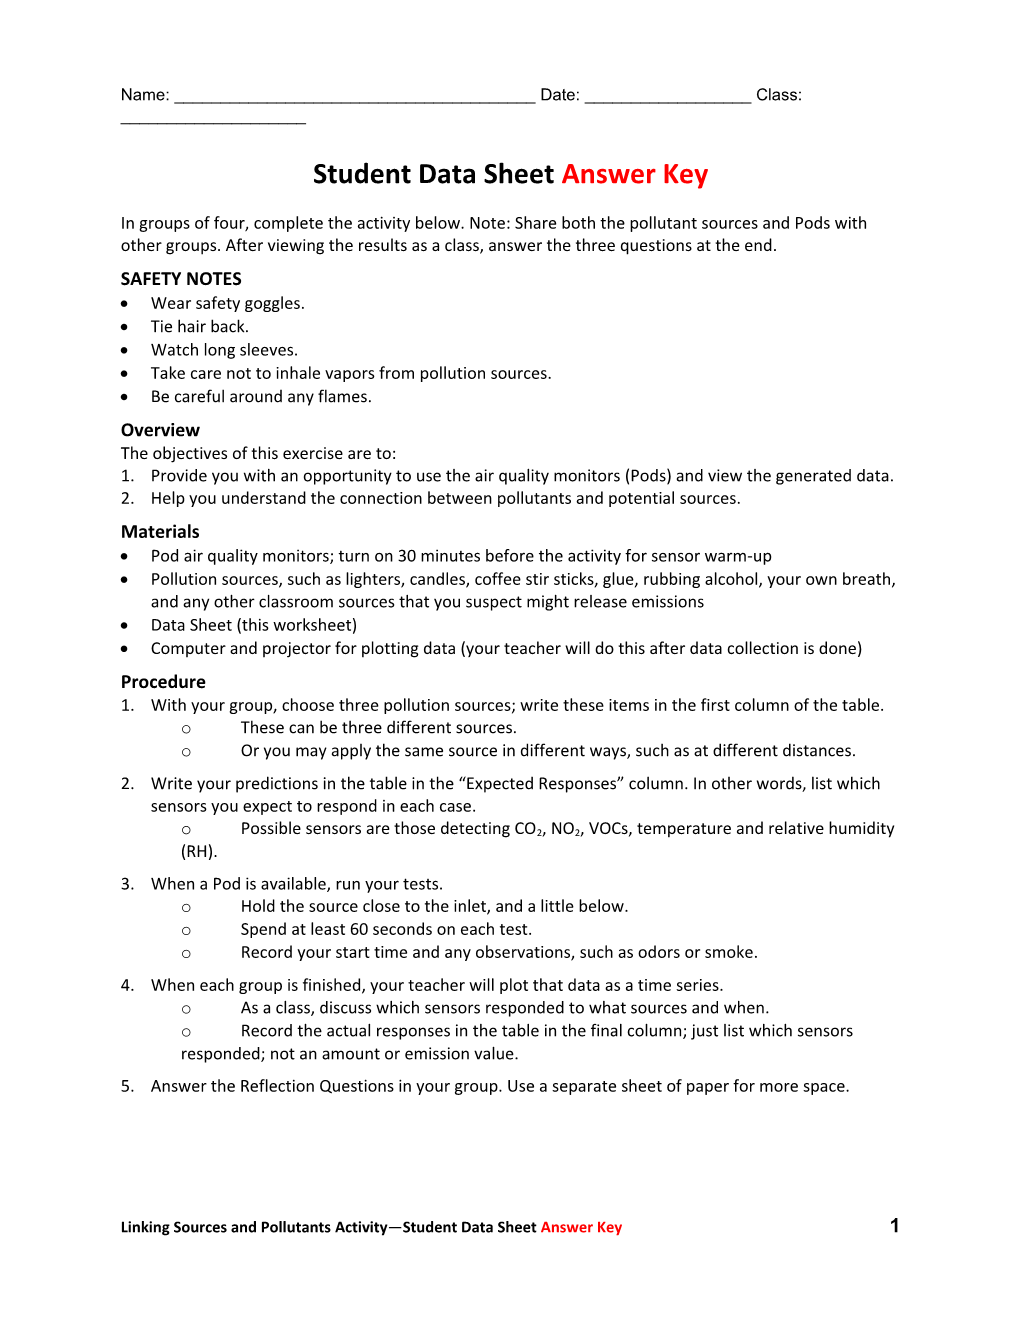 Student Data Sheet Answer Key